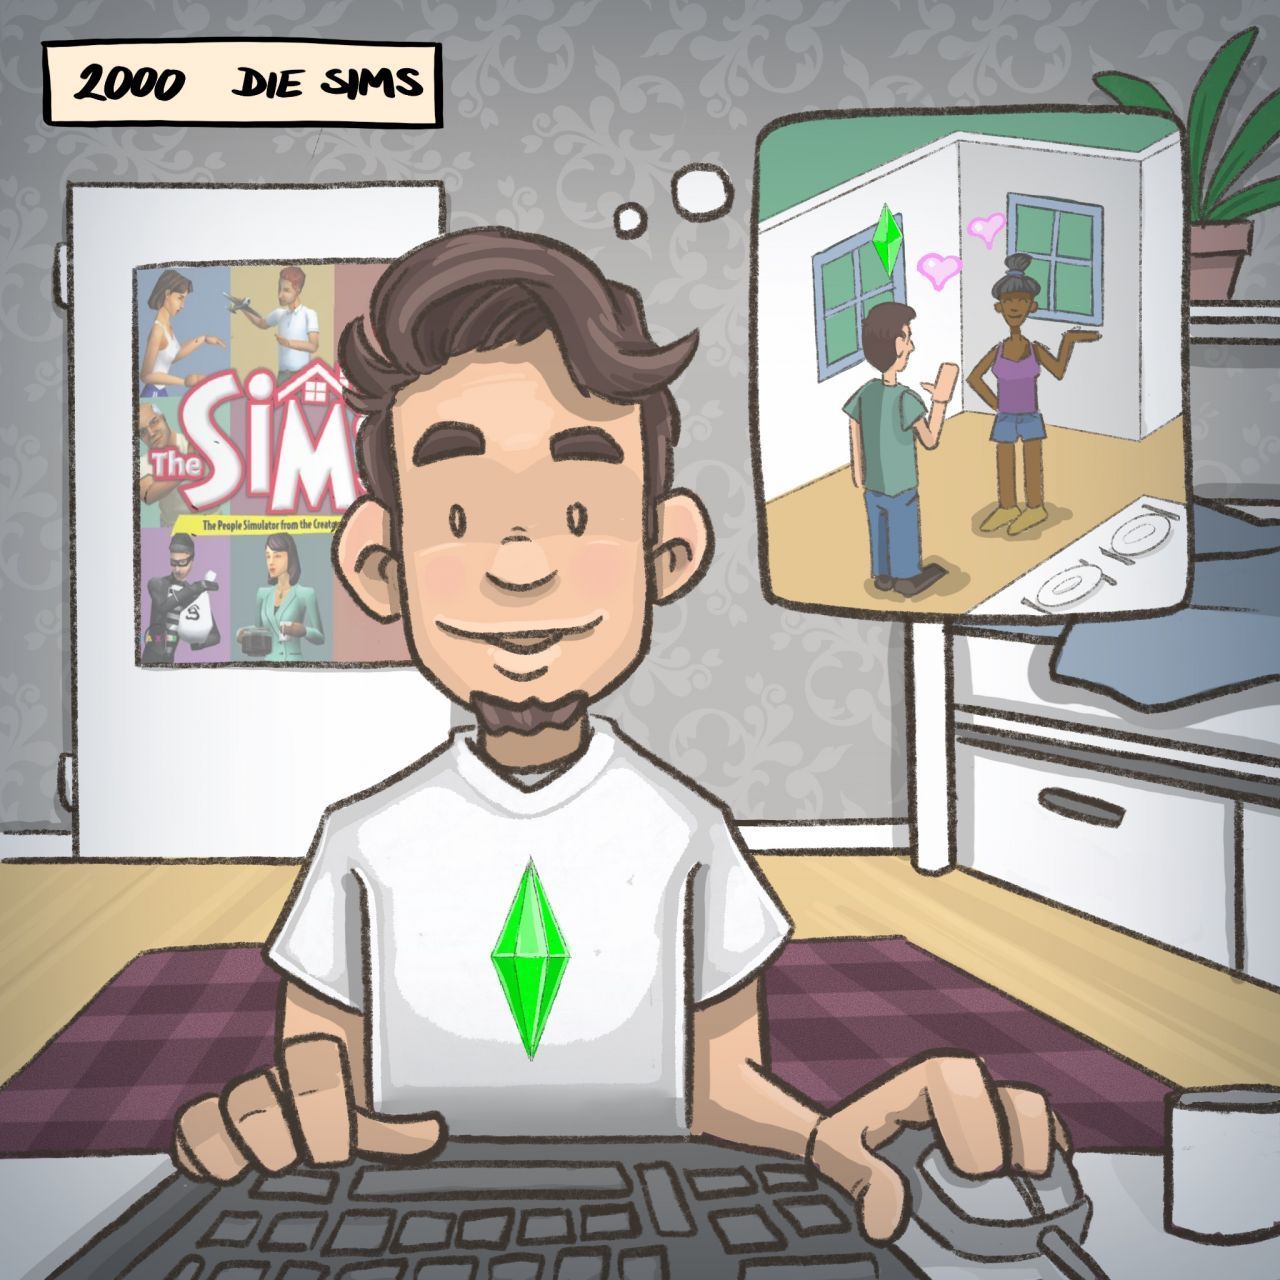 2000: Abtauchen in eine Phantasiewelt versprach "Die Sims". Jede/r konnte sich den Charakter erschaffen, der er oder sie gern sein wollte.